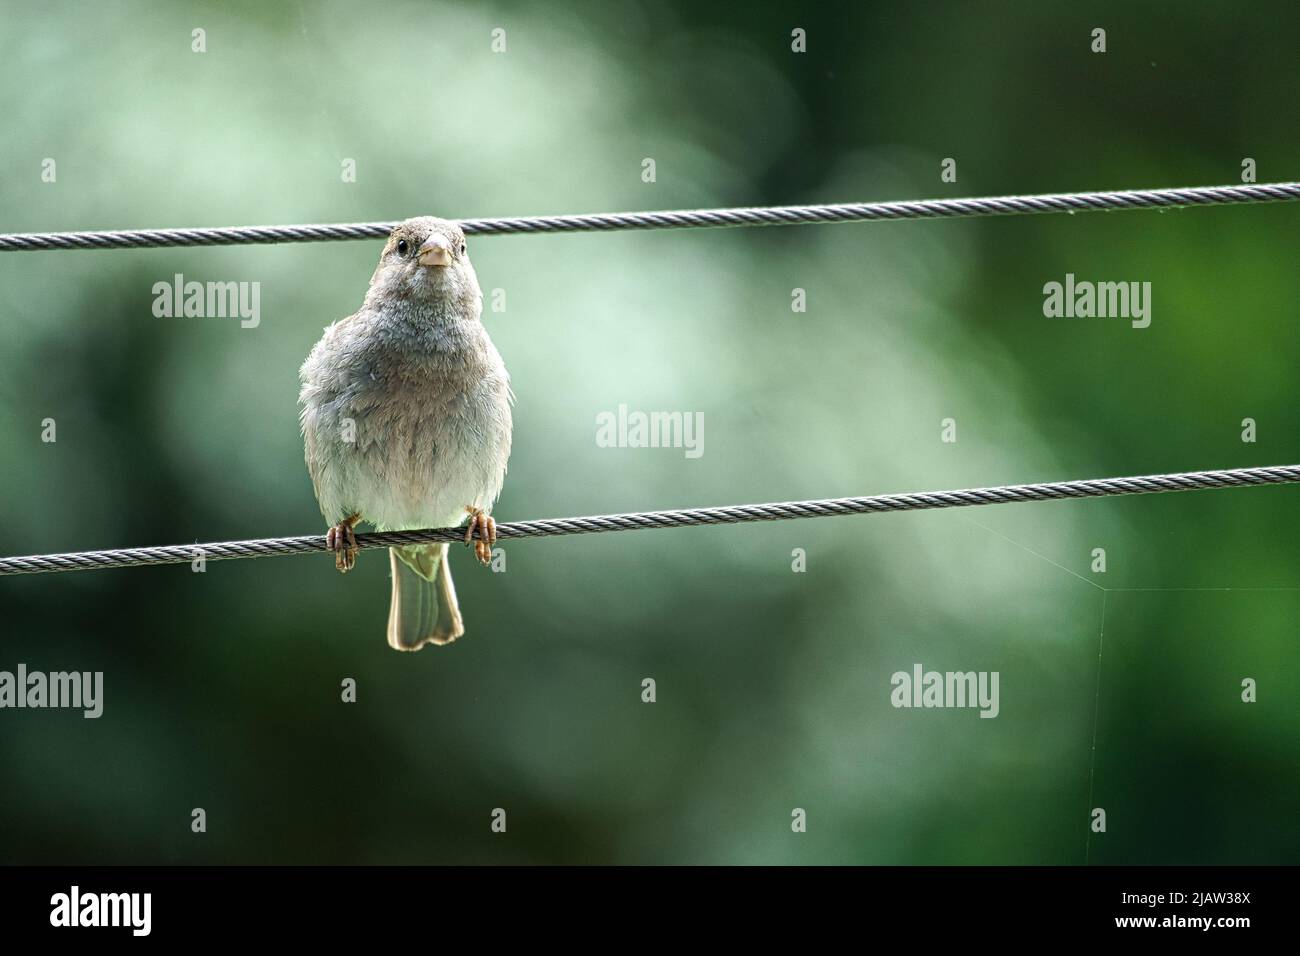 Brauner Sperling auf einem Drahtseil. Kleiner singvögel mit schönem Gefieder. Der Sperling ist ein gefährdeter Vogel. Aufgenommen in Deutschland Stockfoto